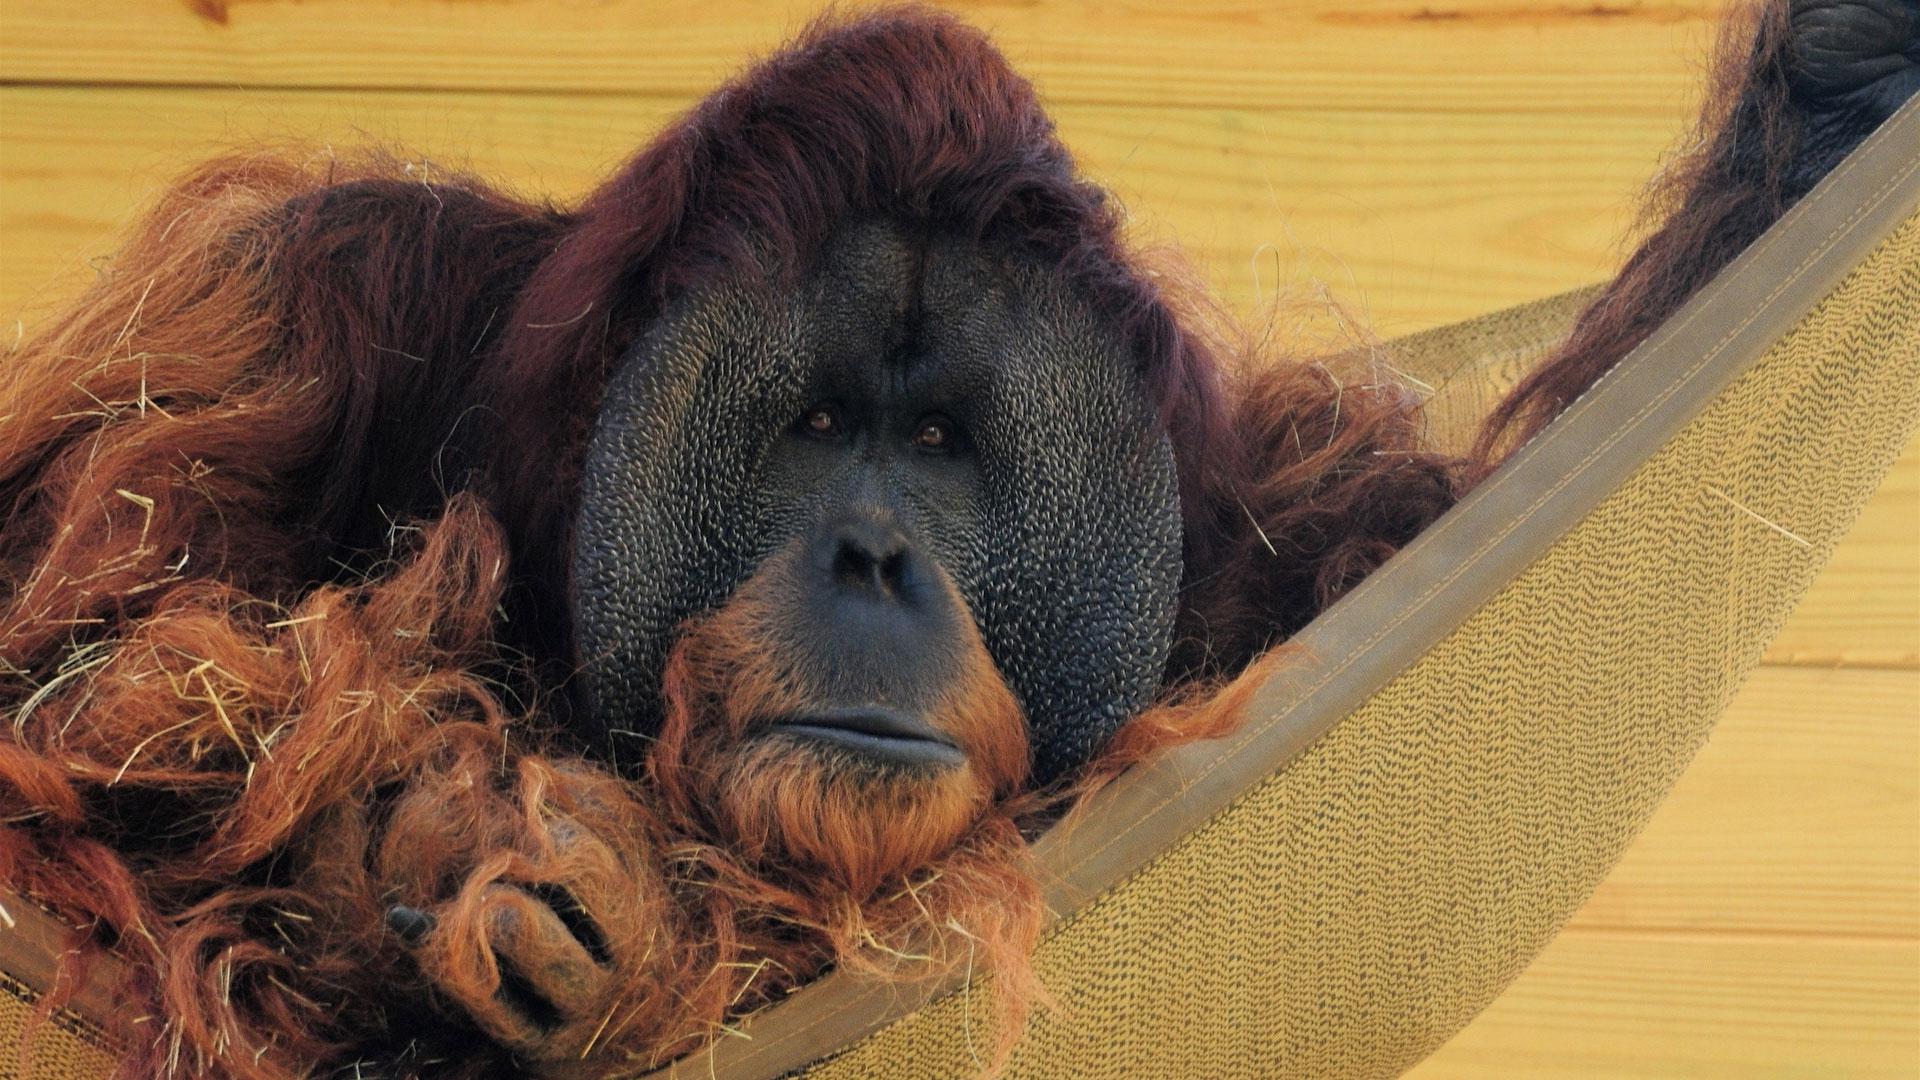 Hammock Wall Wool Orangutan Straw , Image, HD